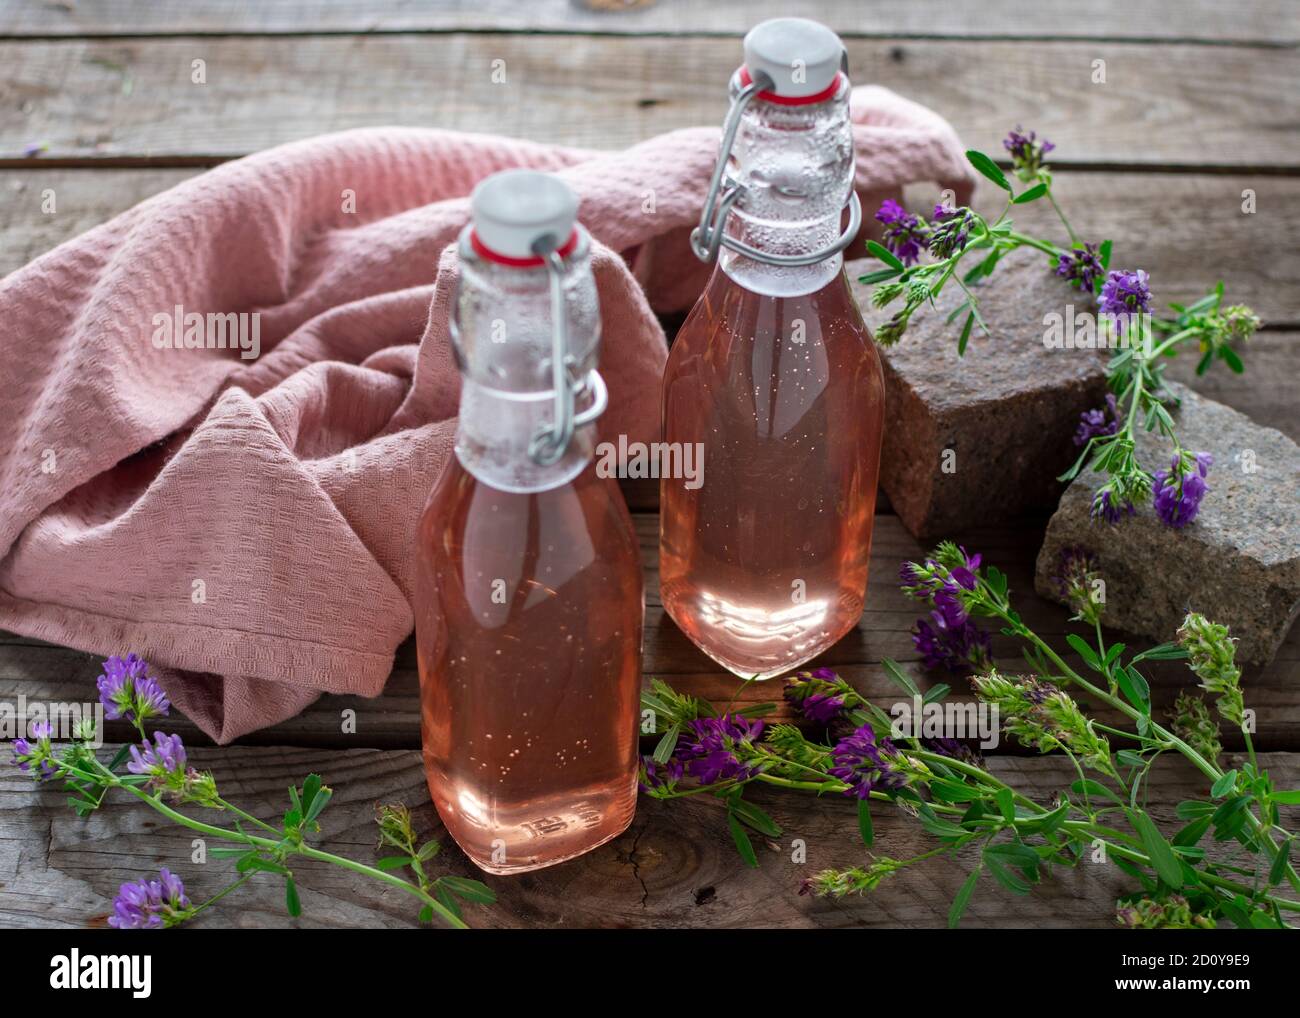 Sirop de lavande frais dans des bouteilles de conservation décoratives remplies de bois Banque D'Images